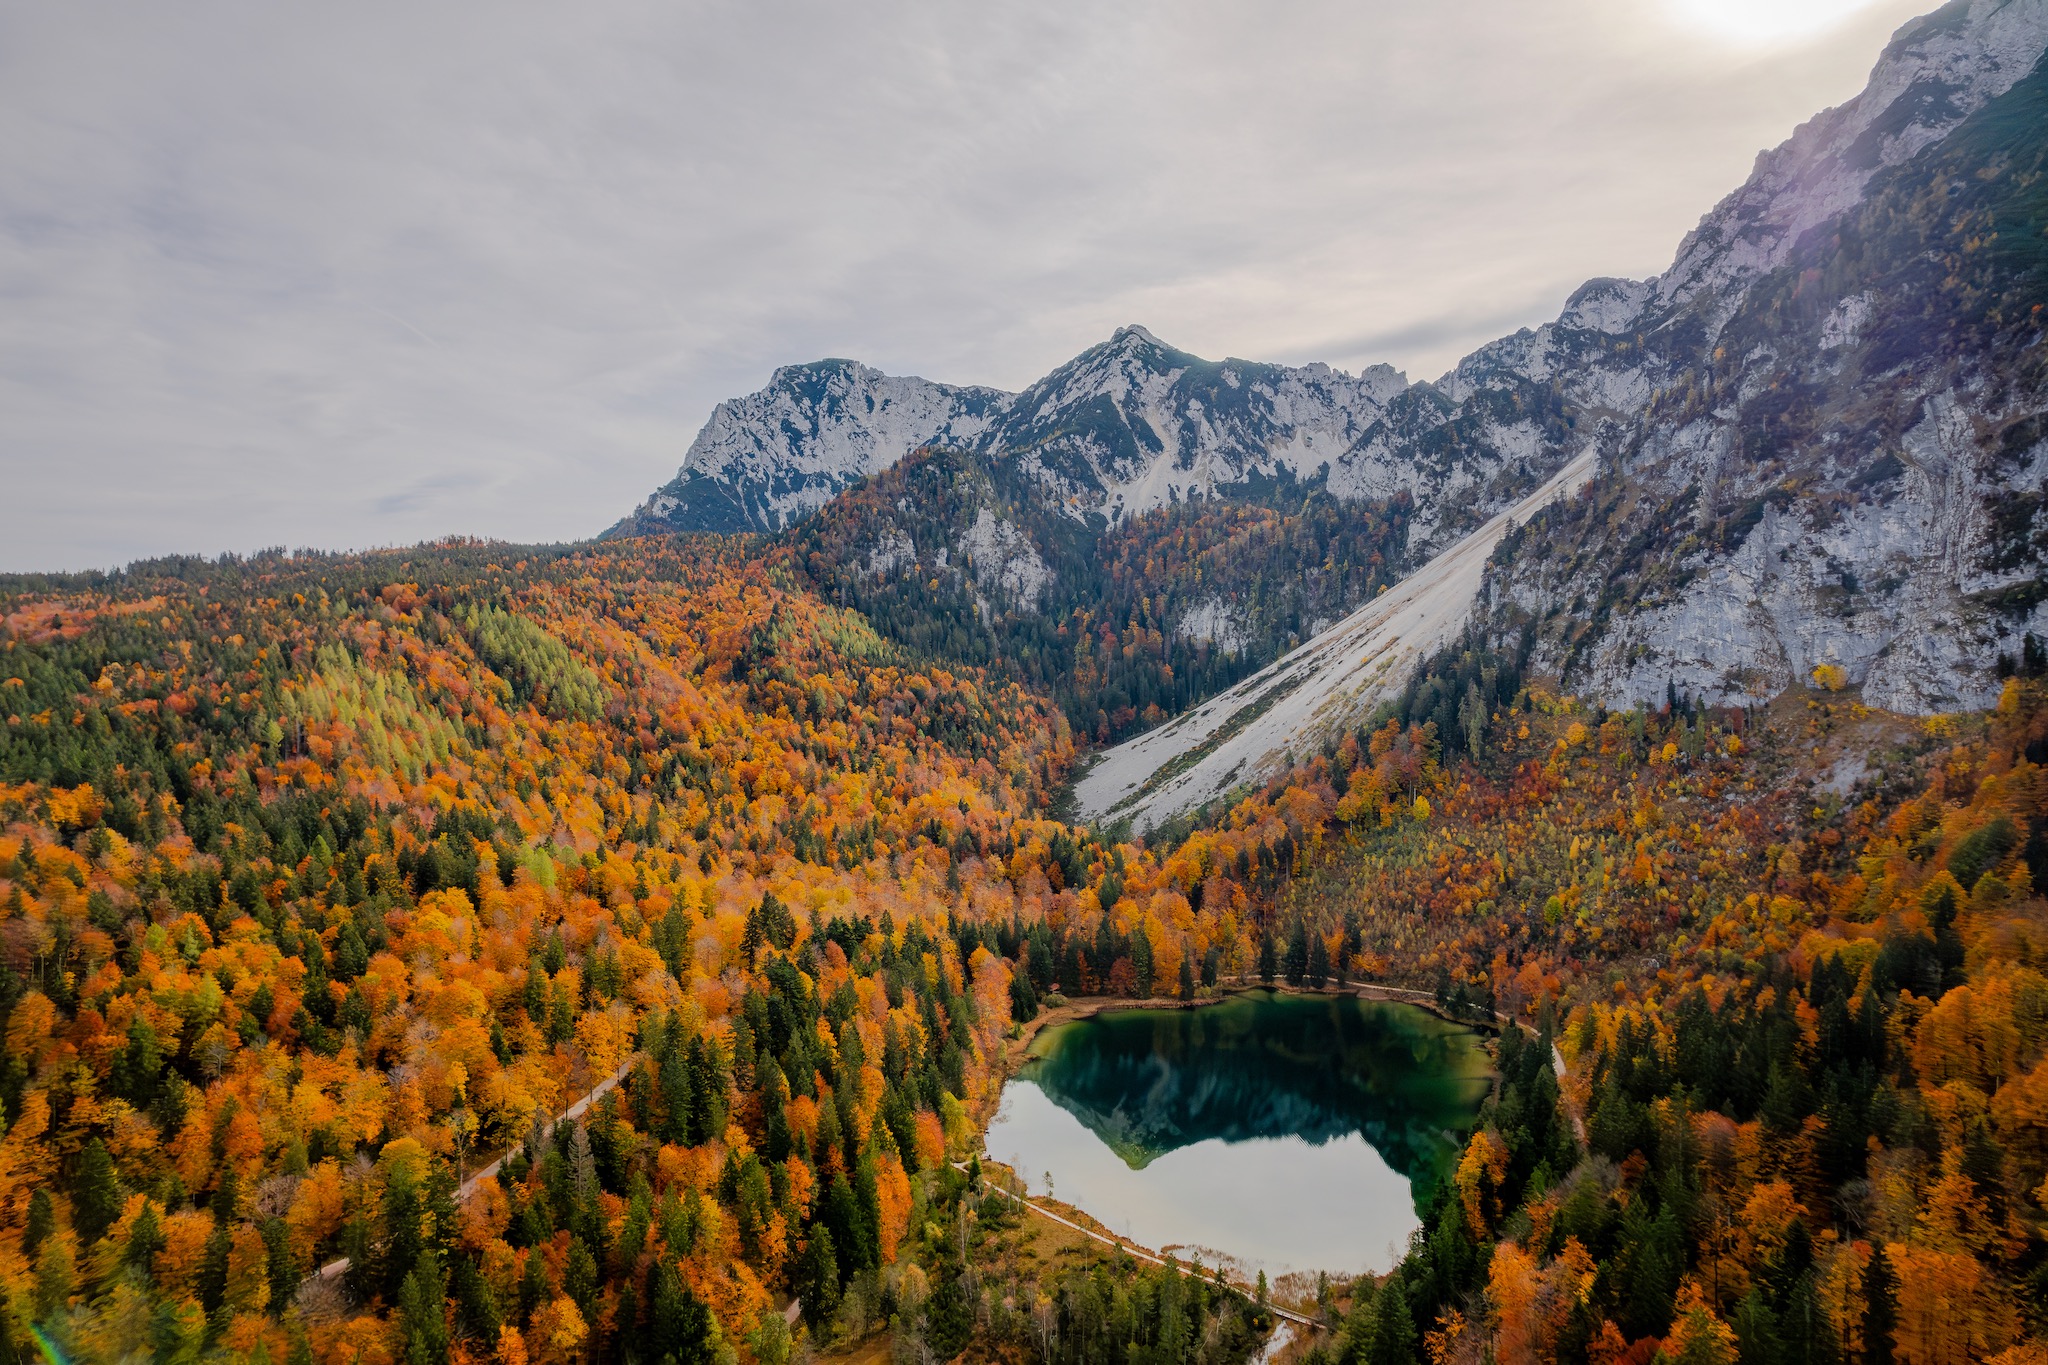 Herbstwandern zum Frillensee: Farbexplosion am kältesten See Deutschlands